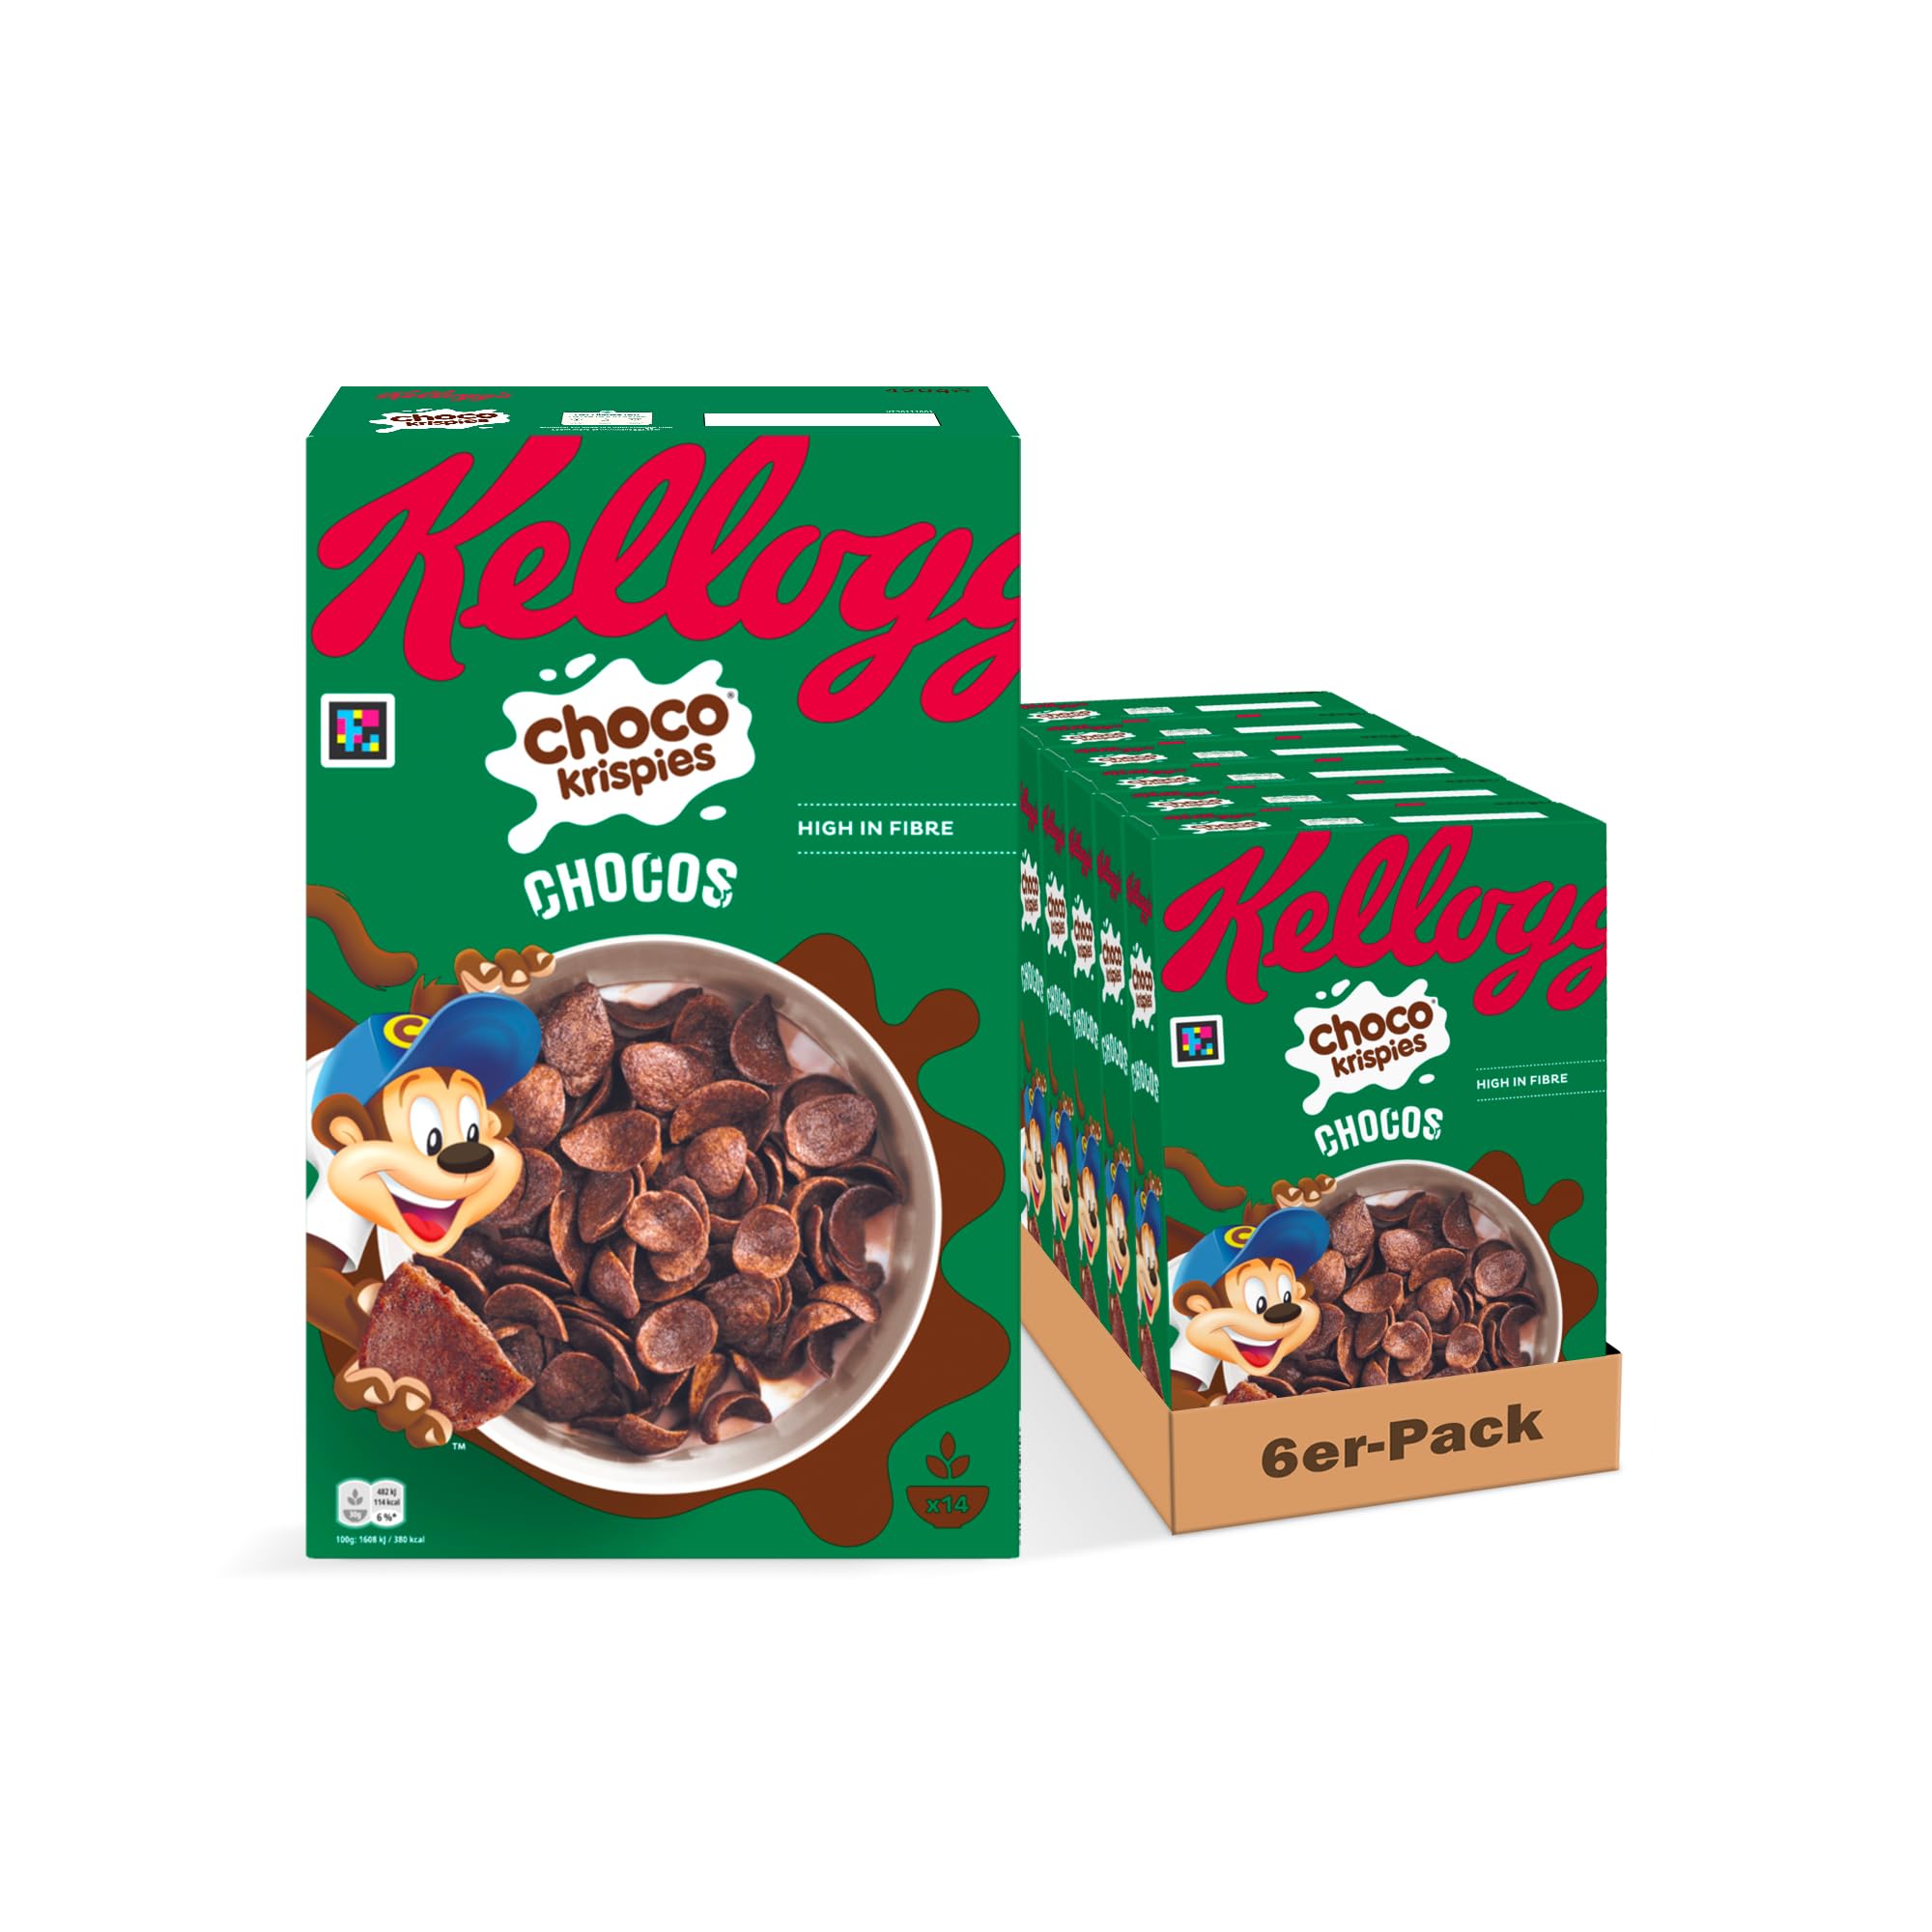 Kellogg's Choco Krispies Chocos (6 x 420 g) – schokoladige Cerealien verwandeln die Milch in Kakao – knusprige Cereal-Chips mit Schokoladengeschmack für maximalen Frühstücks-Spaß